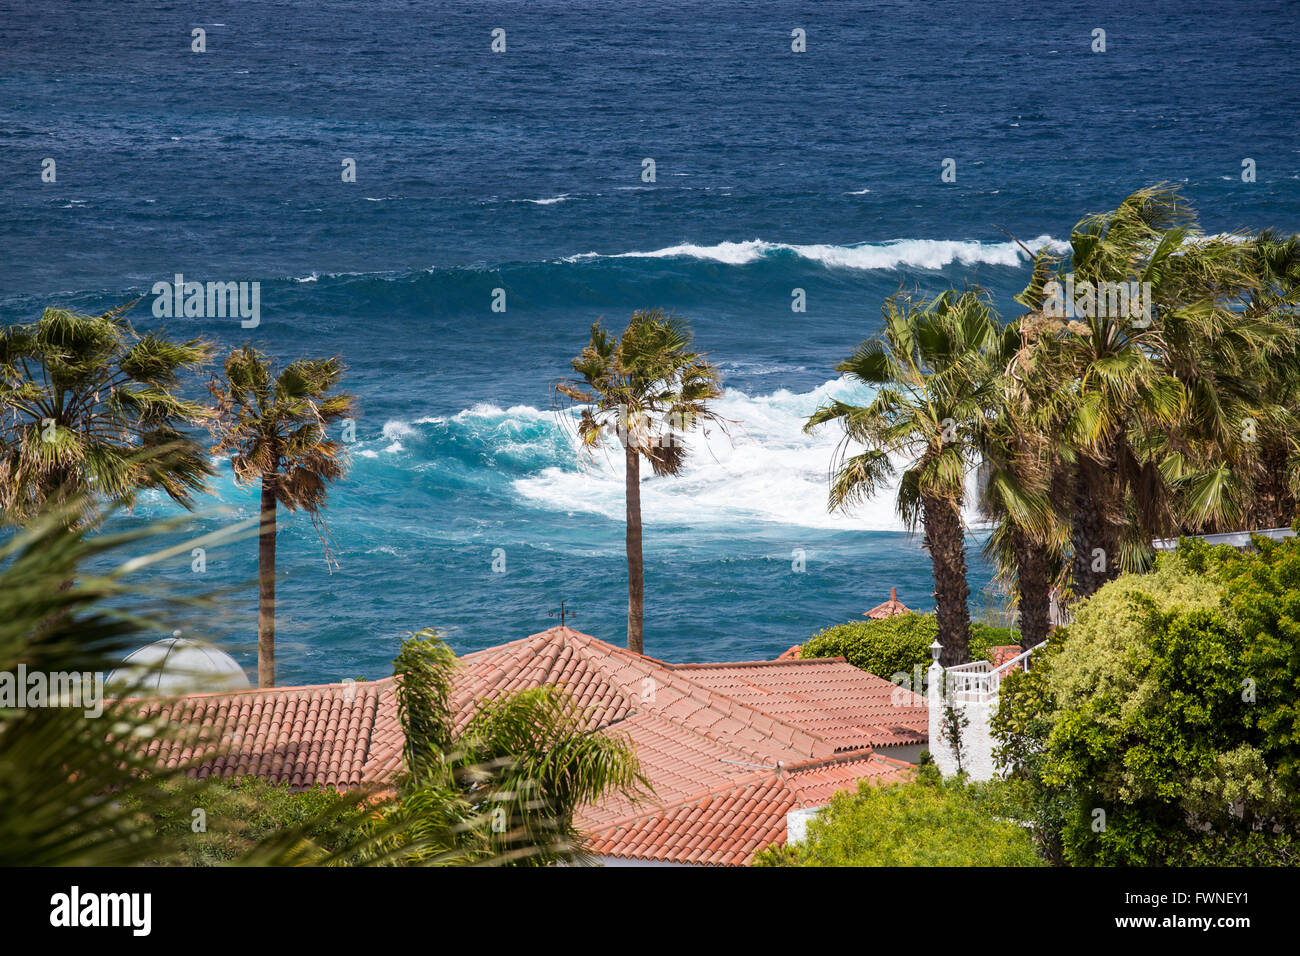 Humide, du vent et une mer en face de villas de luxe à Los Gigantes pendant une tempête hivernale, Tenerife, Canaries, Espagne. Banque D'Images